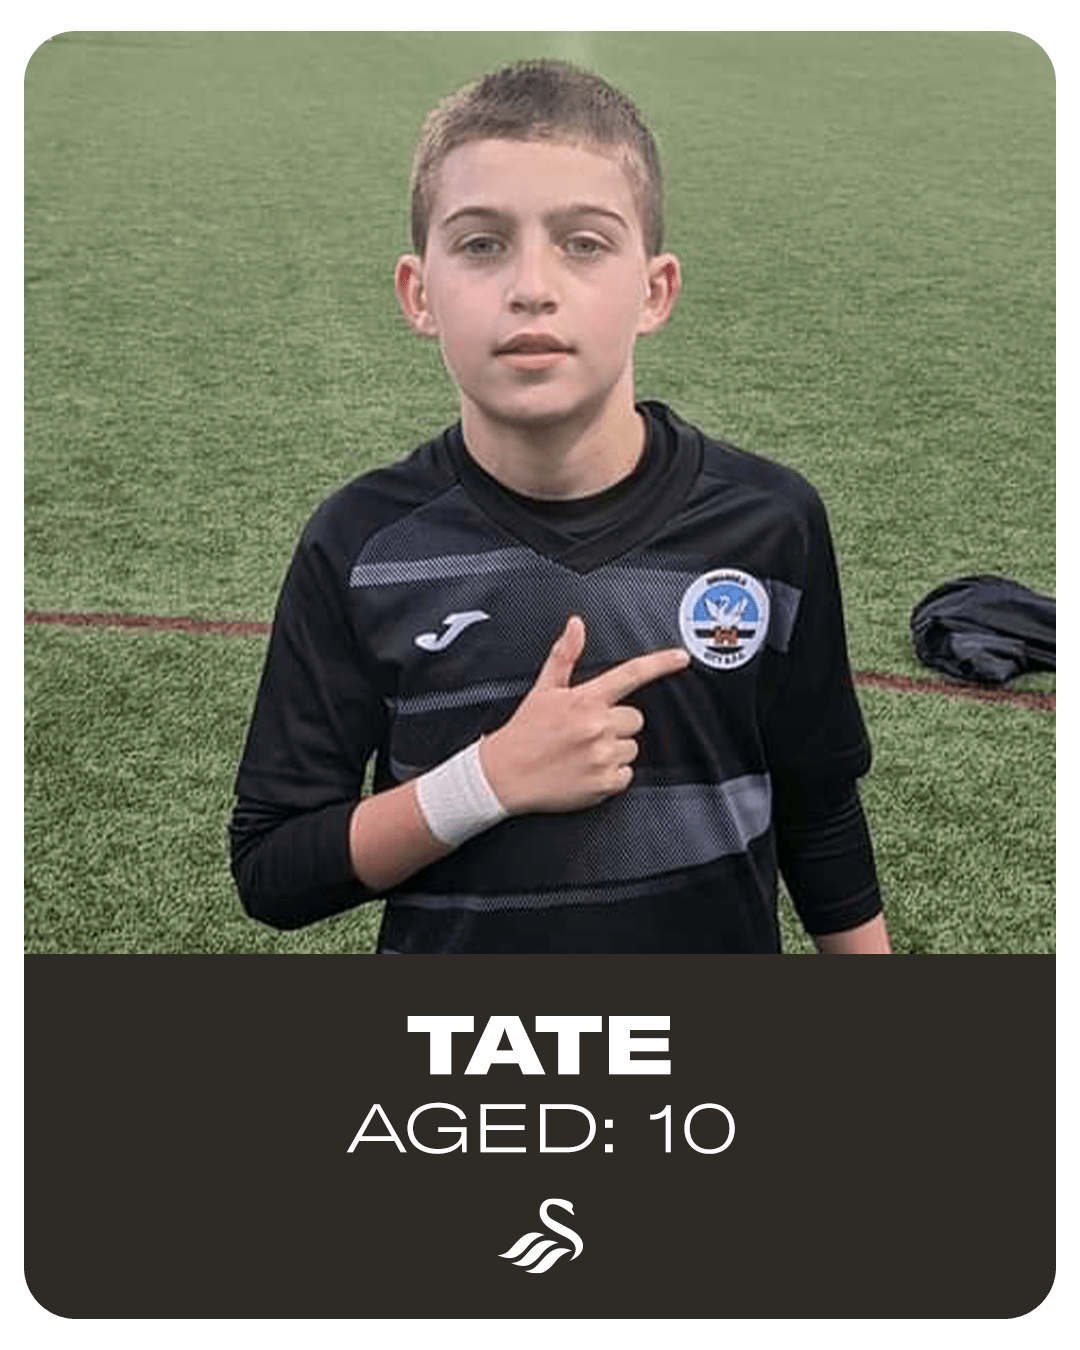 Tate, aged 10